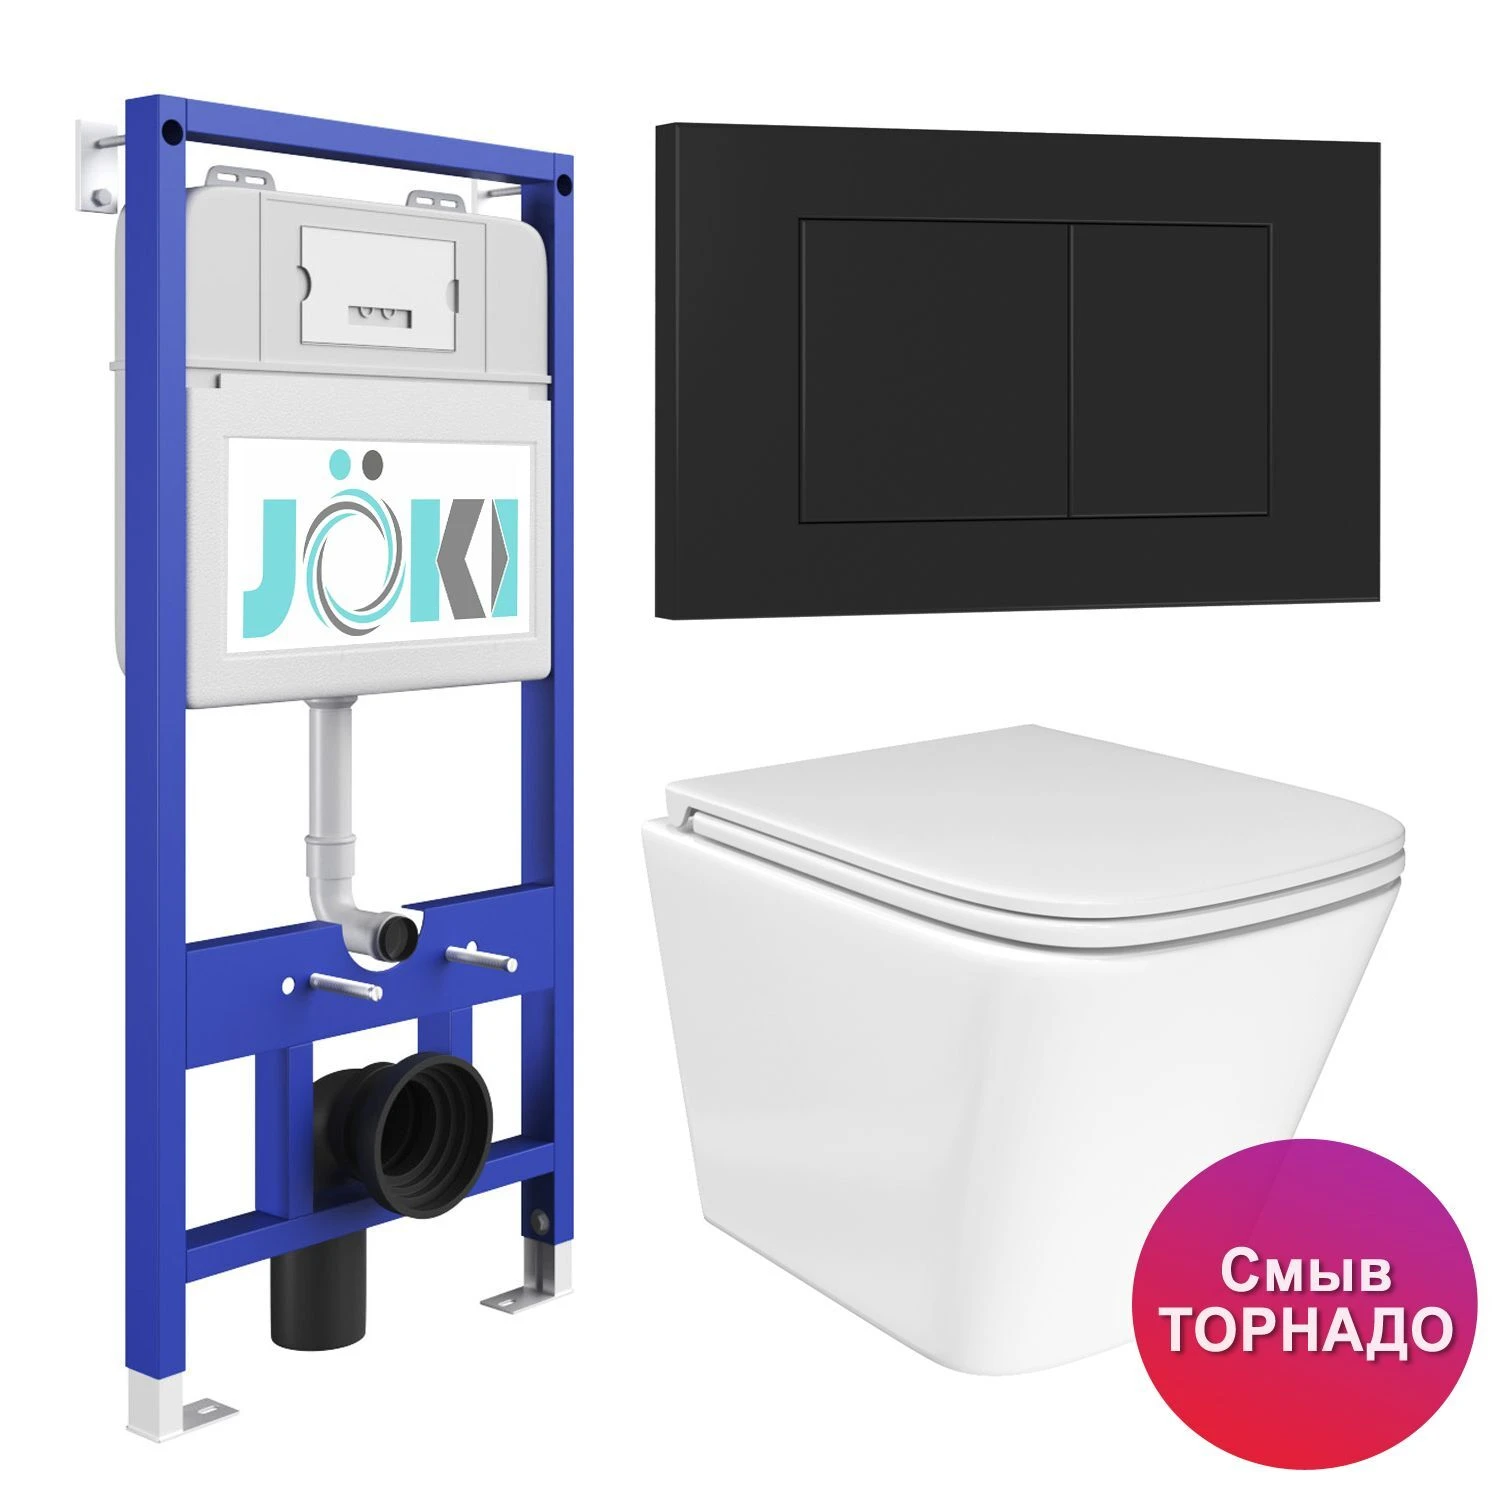 Комплект: JOKI Инсталляция JK01150+Кнопка JK013525BM черный+Verna T JK3031025 белый унитаз, смыв Торнадо